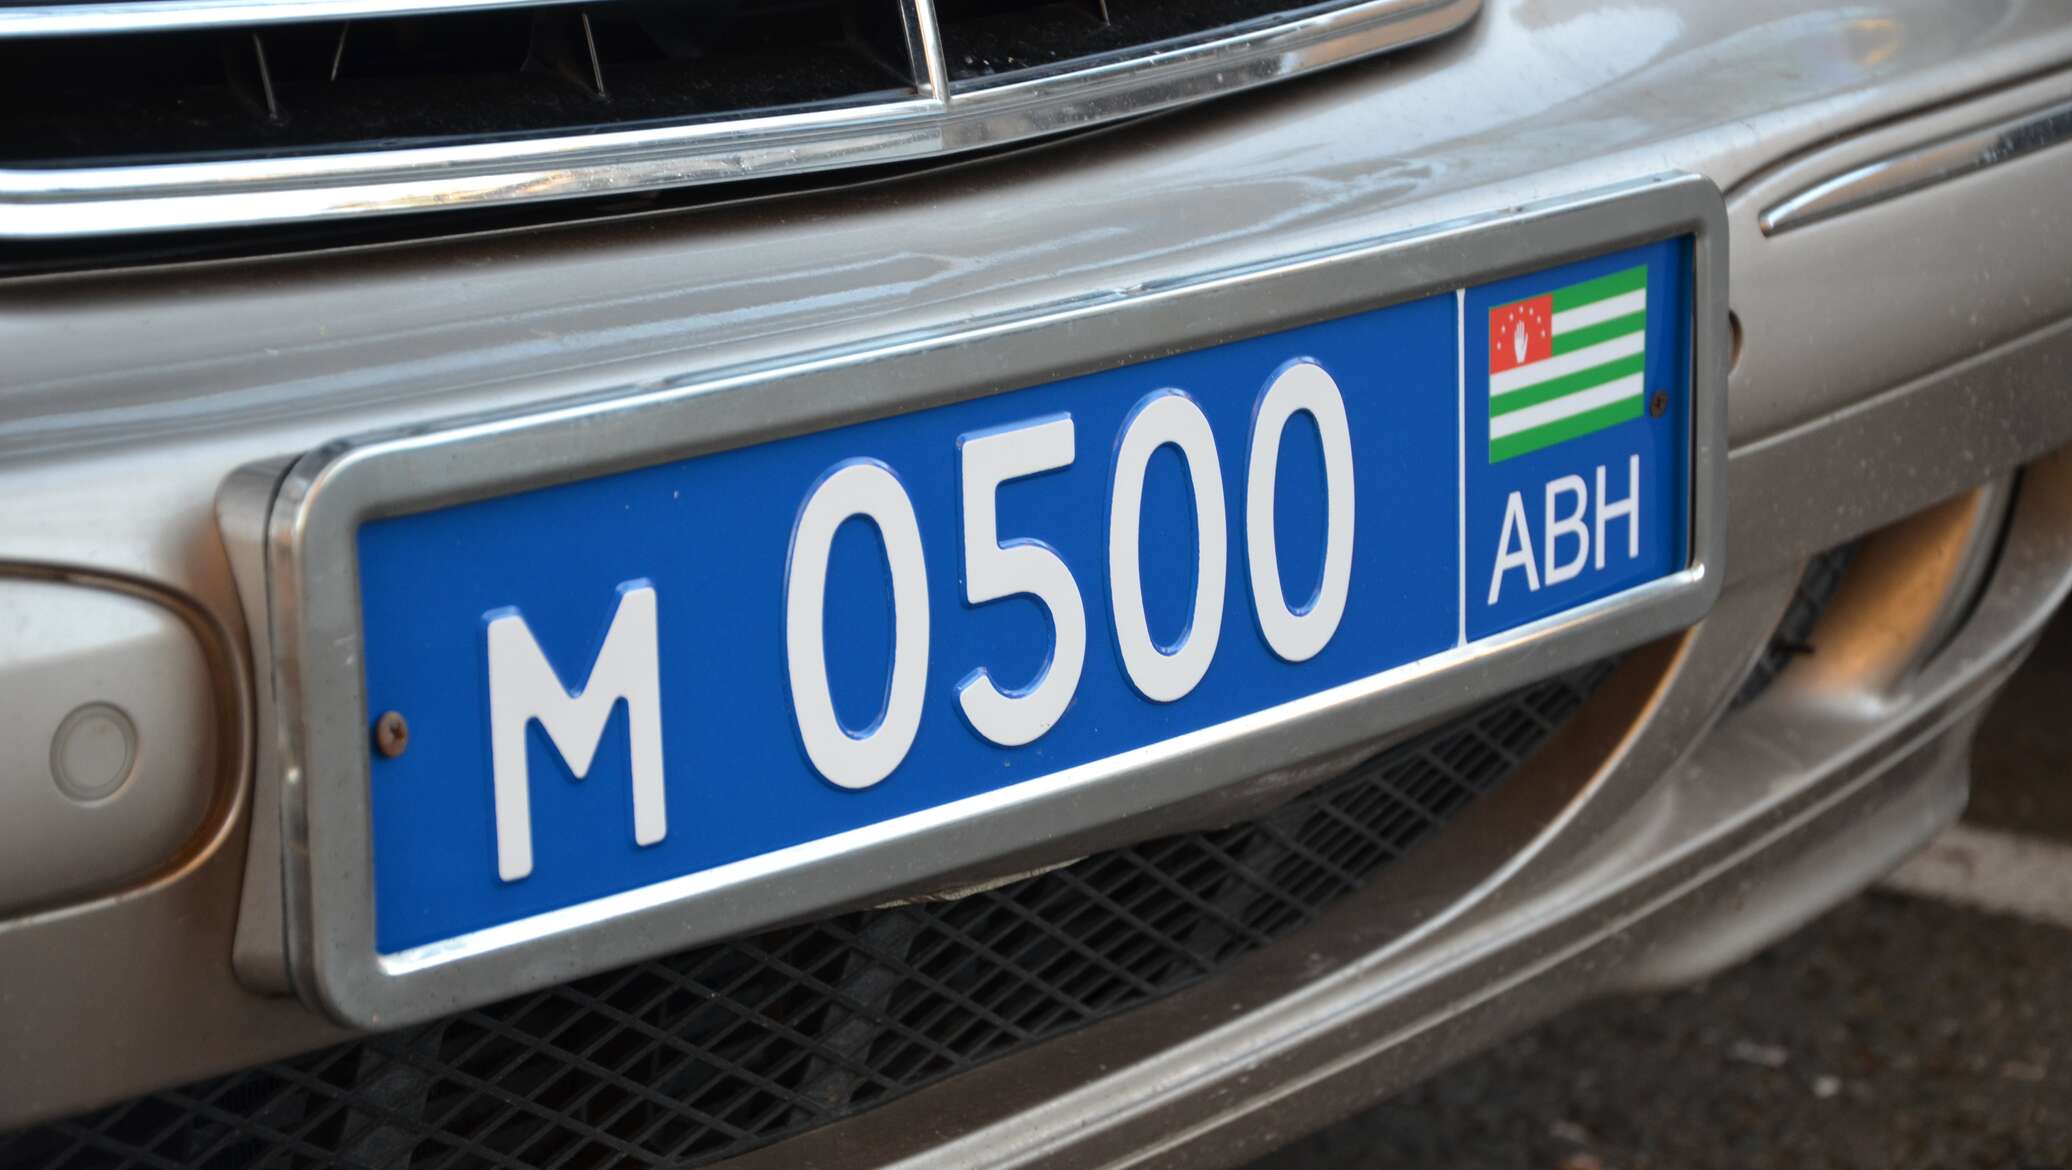 Как ездить на абхазских номерах. Номера Абхазии автомобильные. Номерной знак Абхазии. Абхазские номера на авто. Абхазия номера машин.